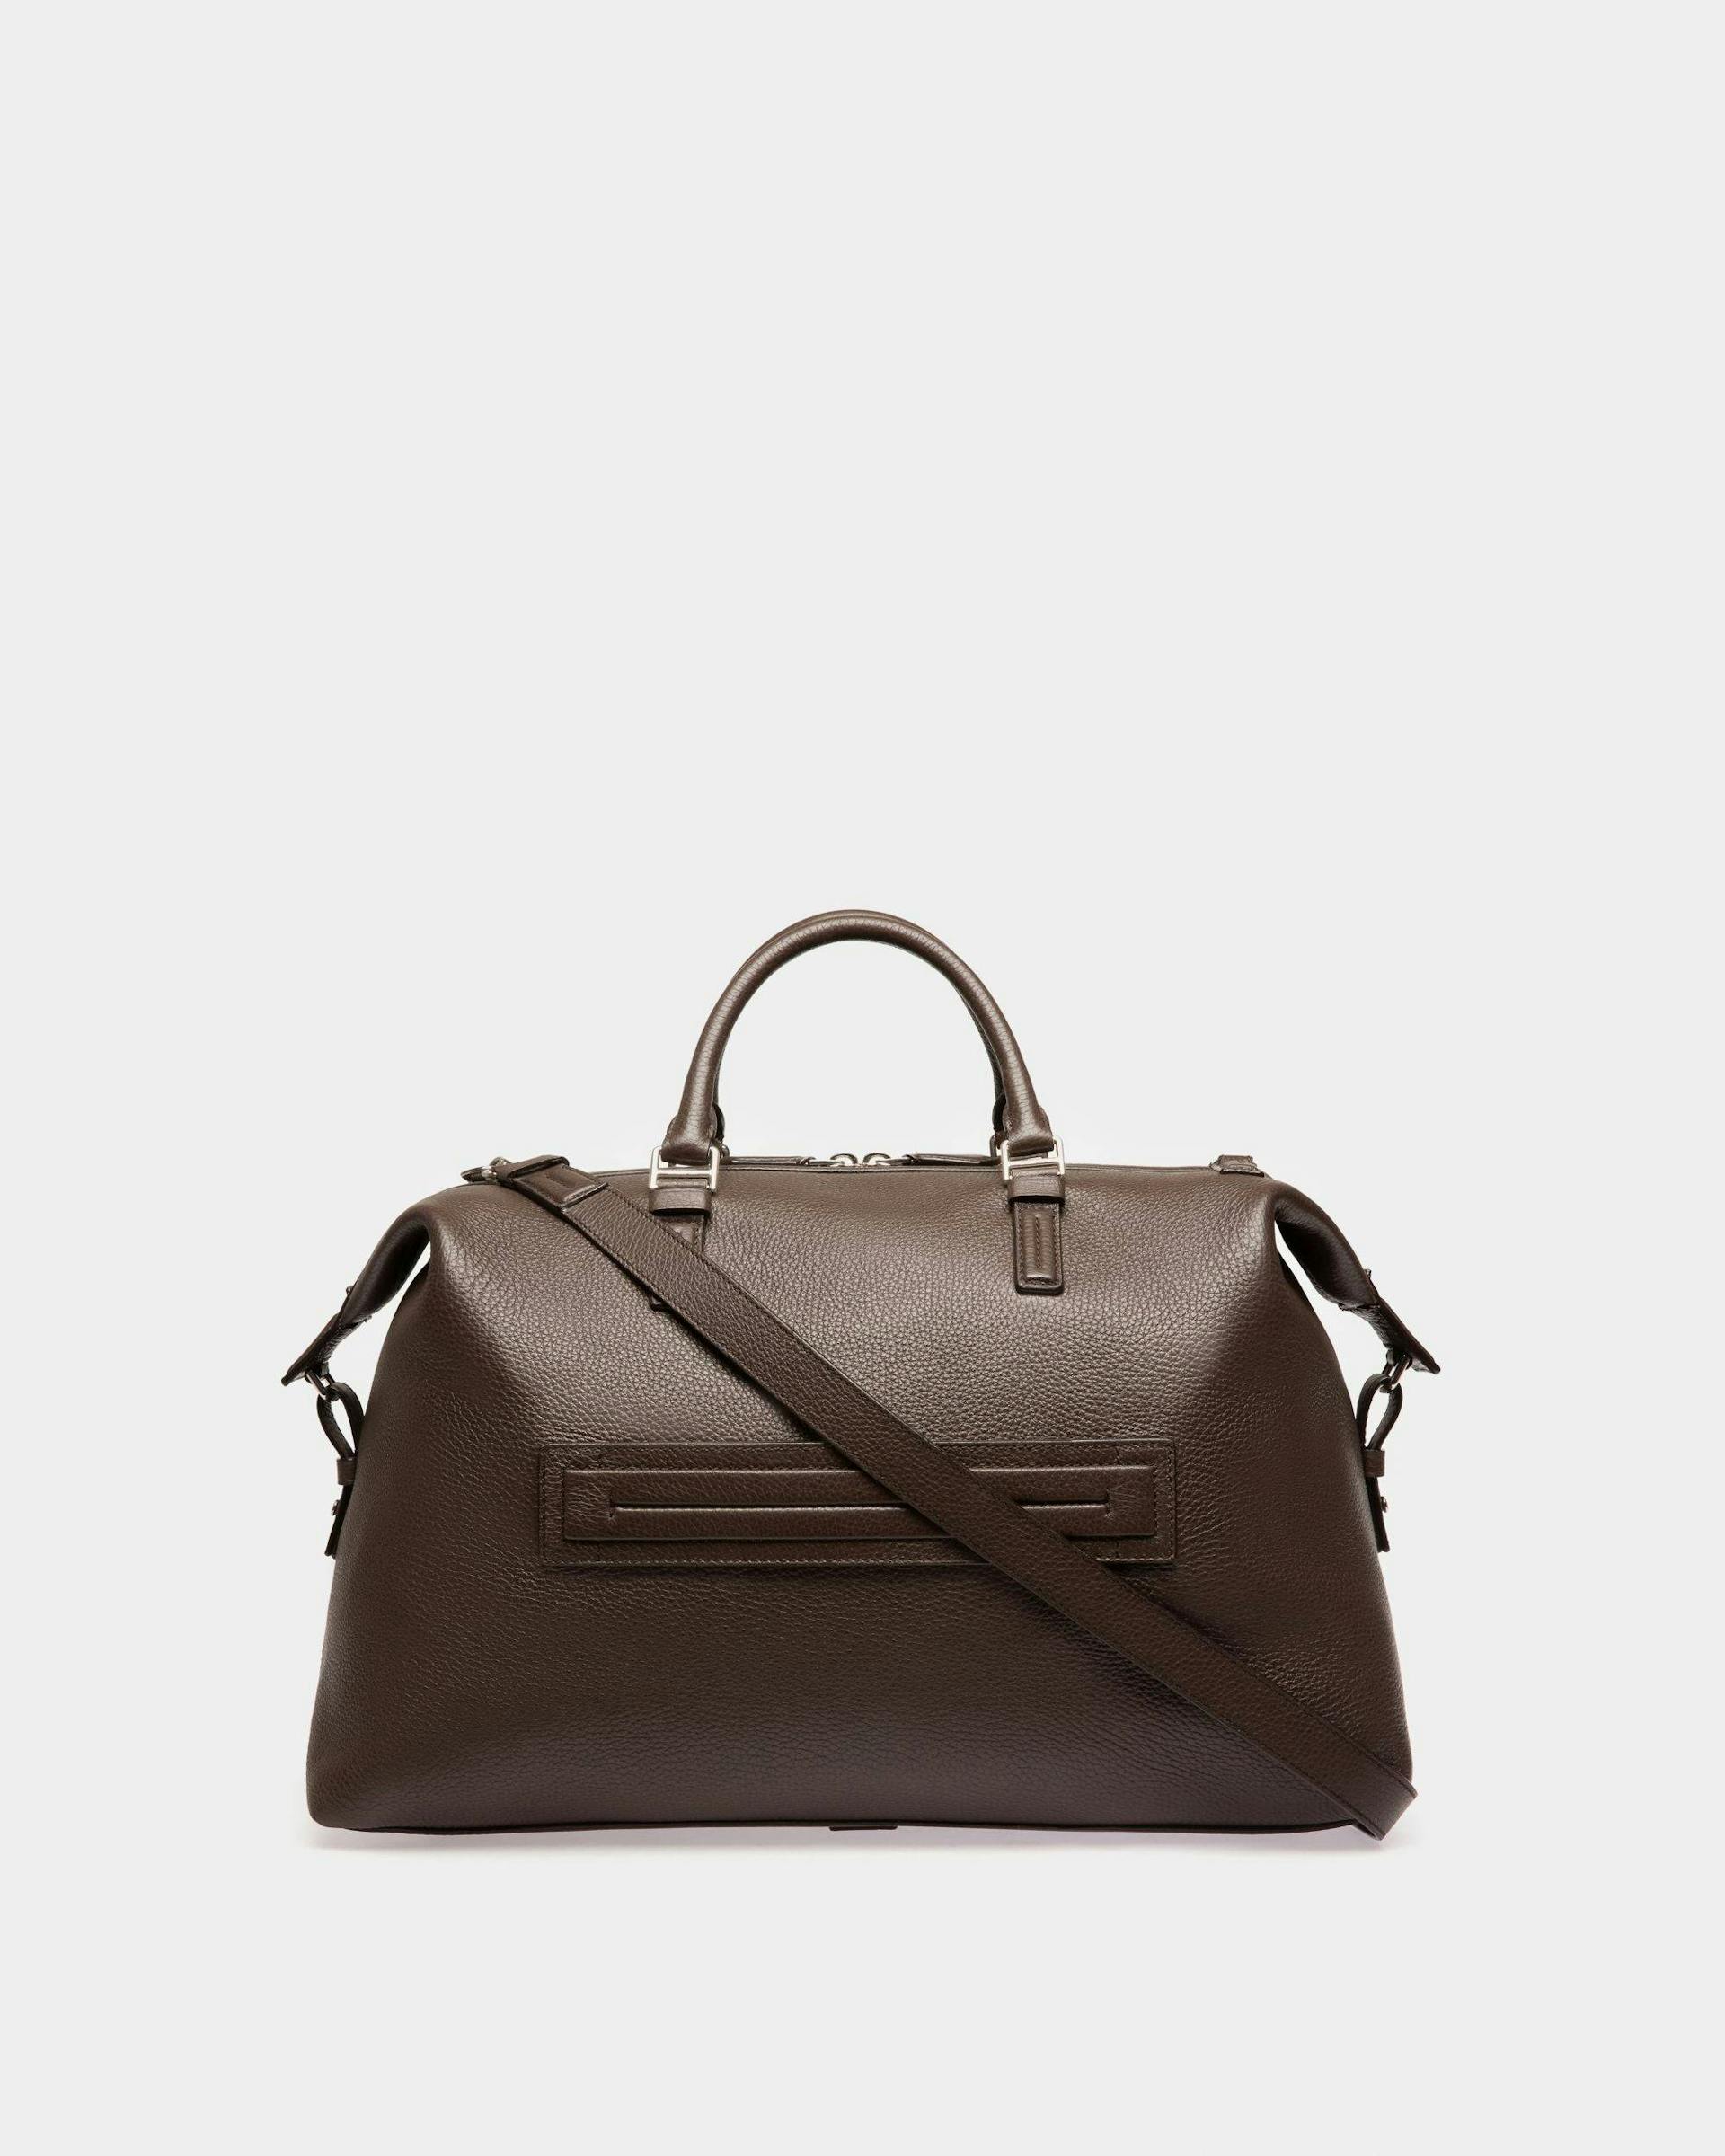 Sandri Leather Weekender Bag In Ebony Brown - Men's - Bally - 03